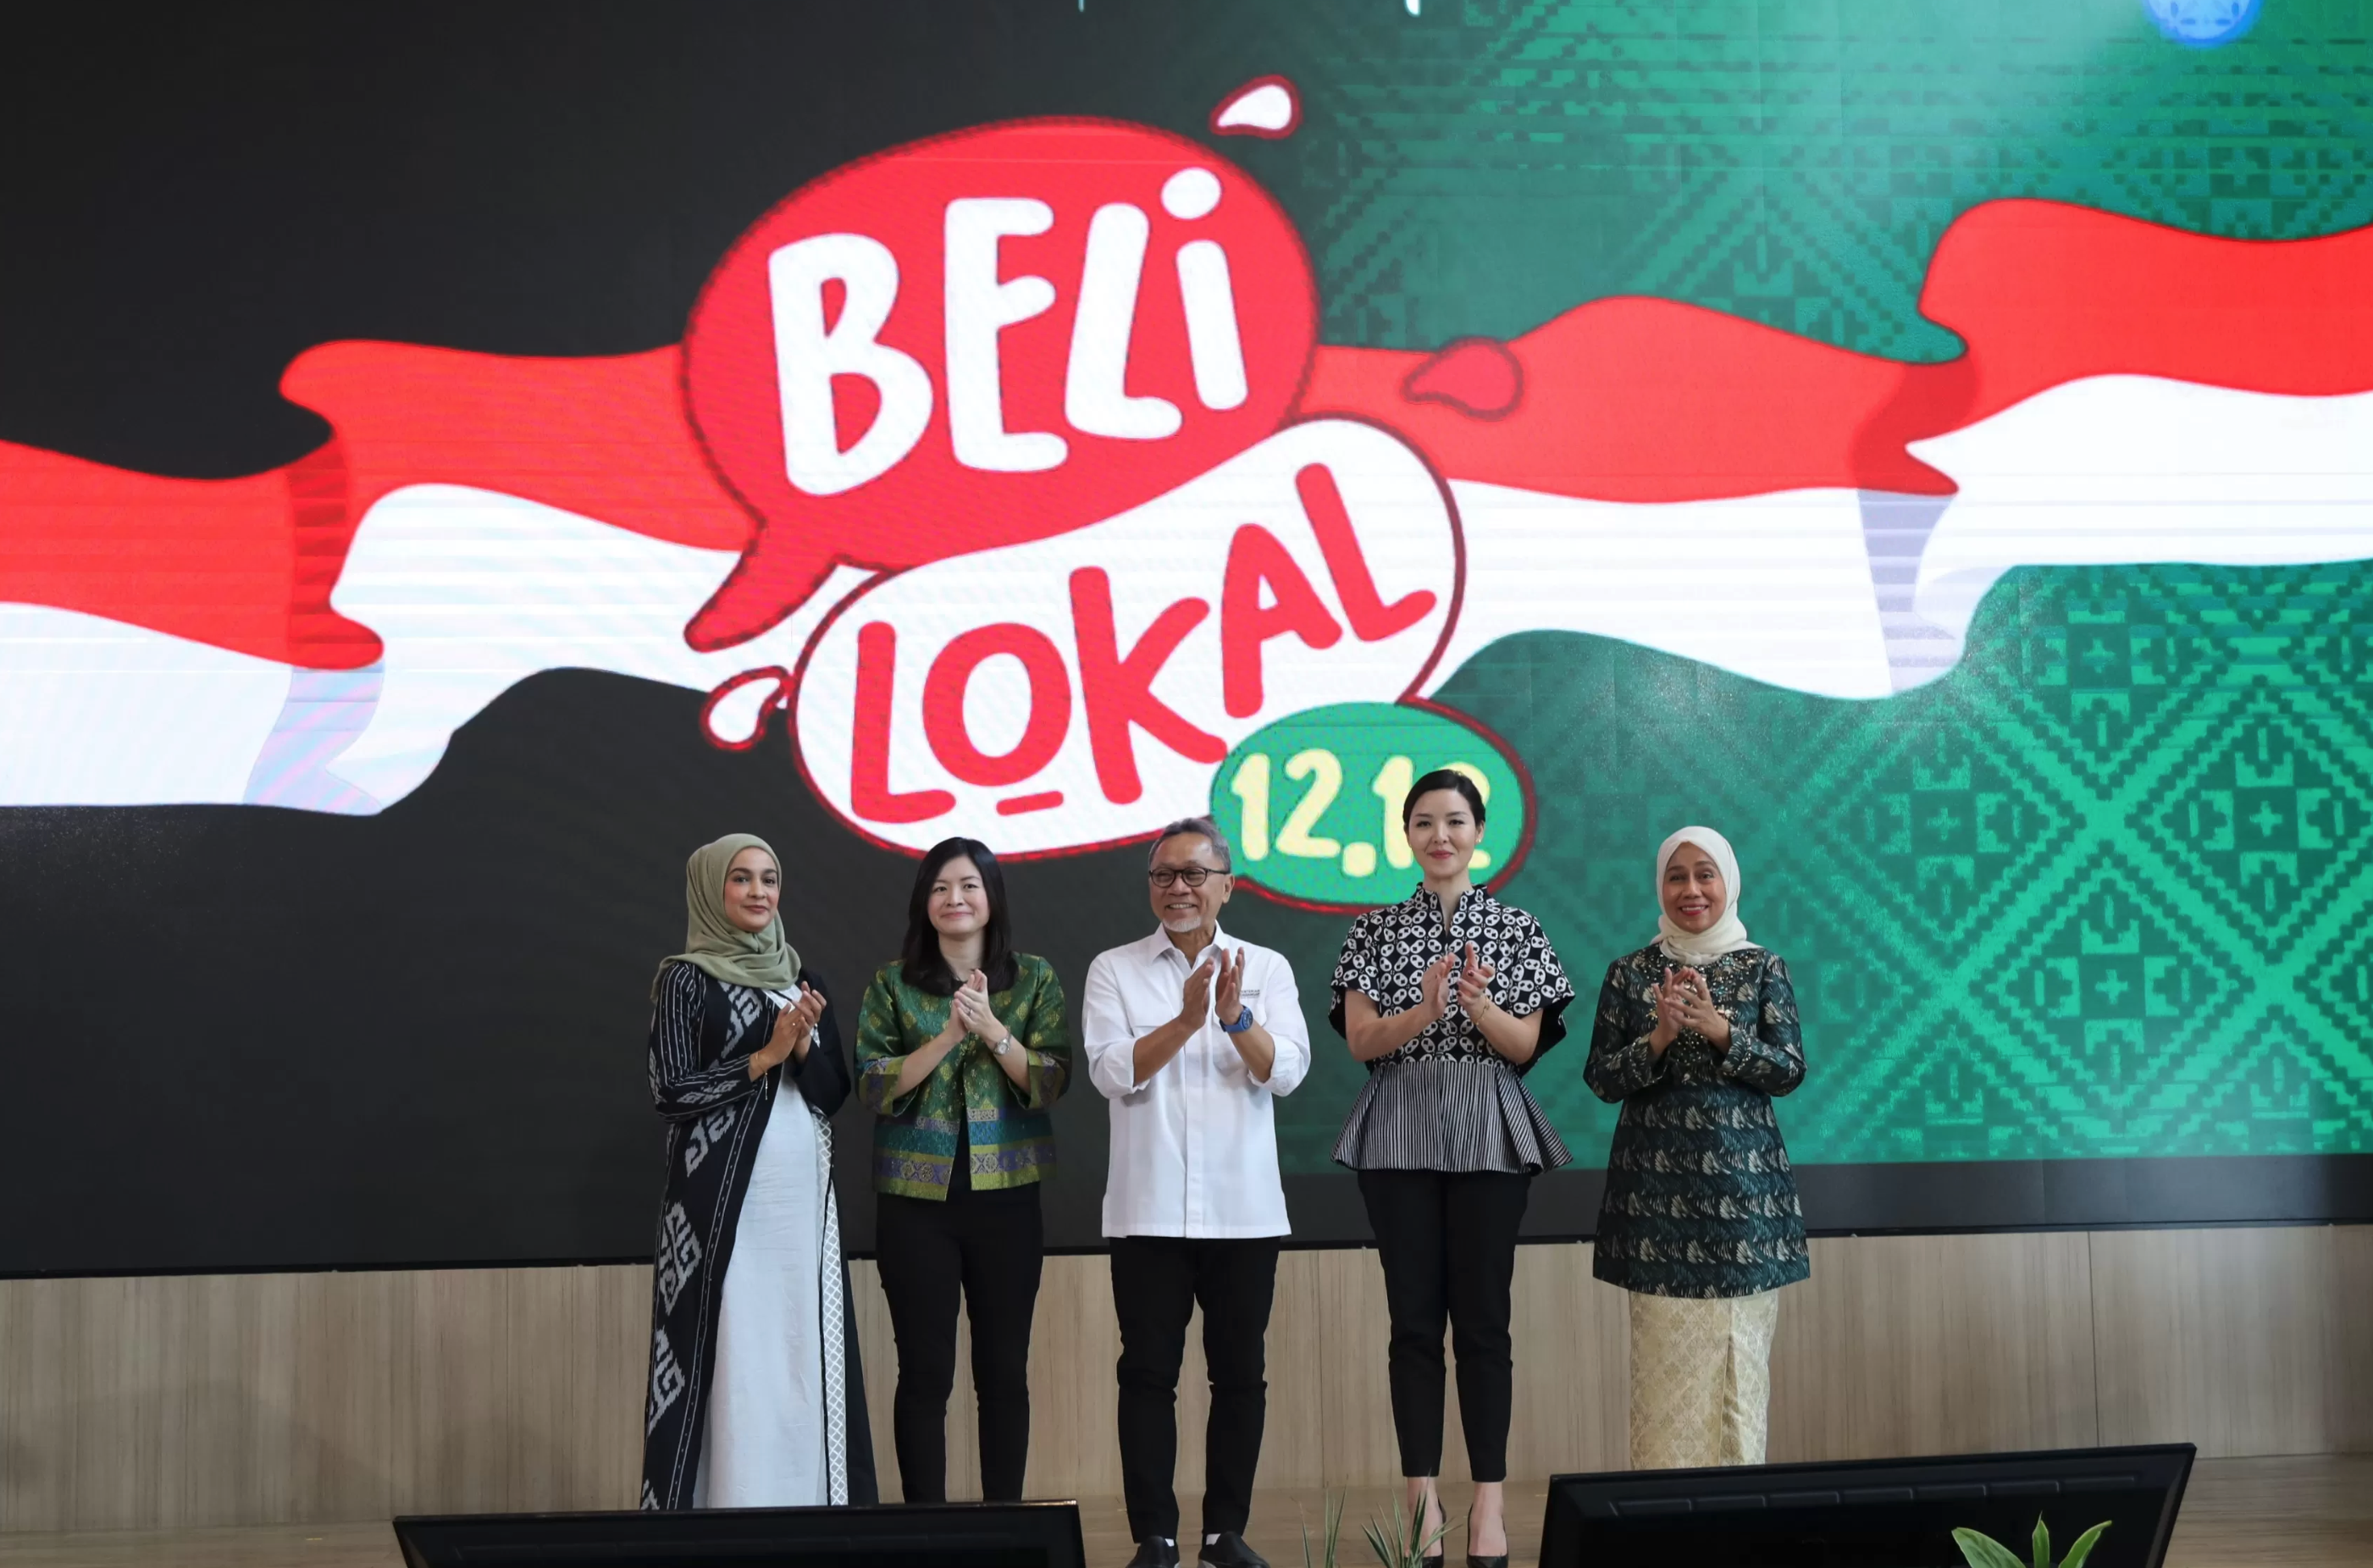 印尼Beli Lokal （购买本地产品）活动